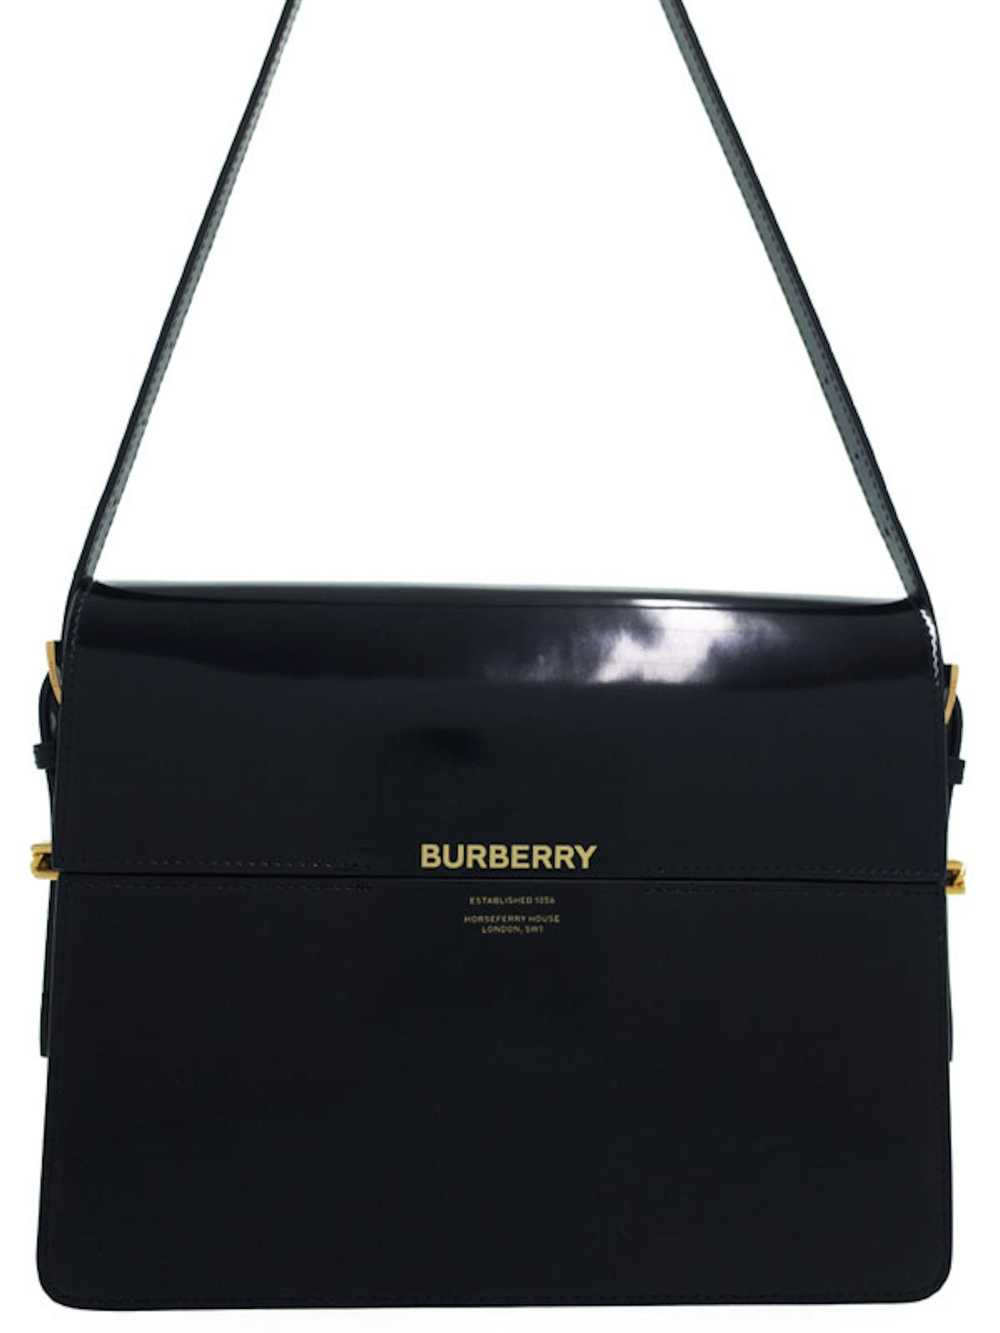 Burberry Burberry Large Grace Shoulder Bag Black - image 1